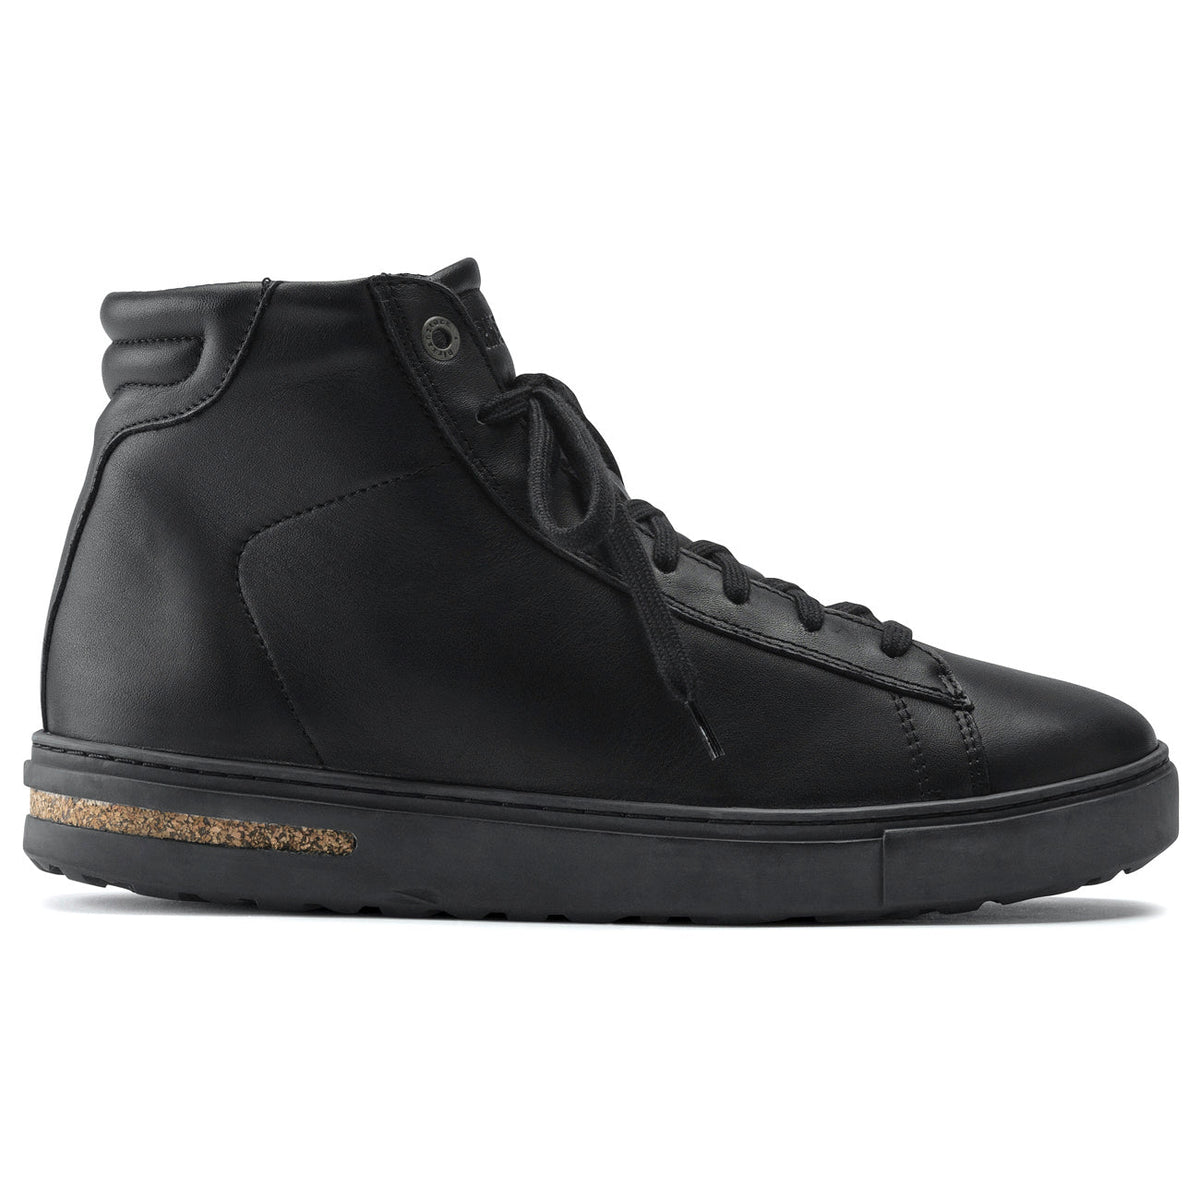 Birkenstock Shoes, Bend Mid, Natural Leather, Regular Fit, Black Shoes Birkenstock Seasonal 